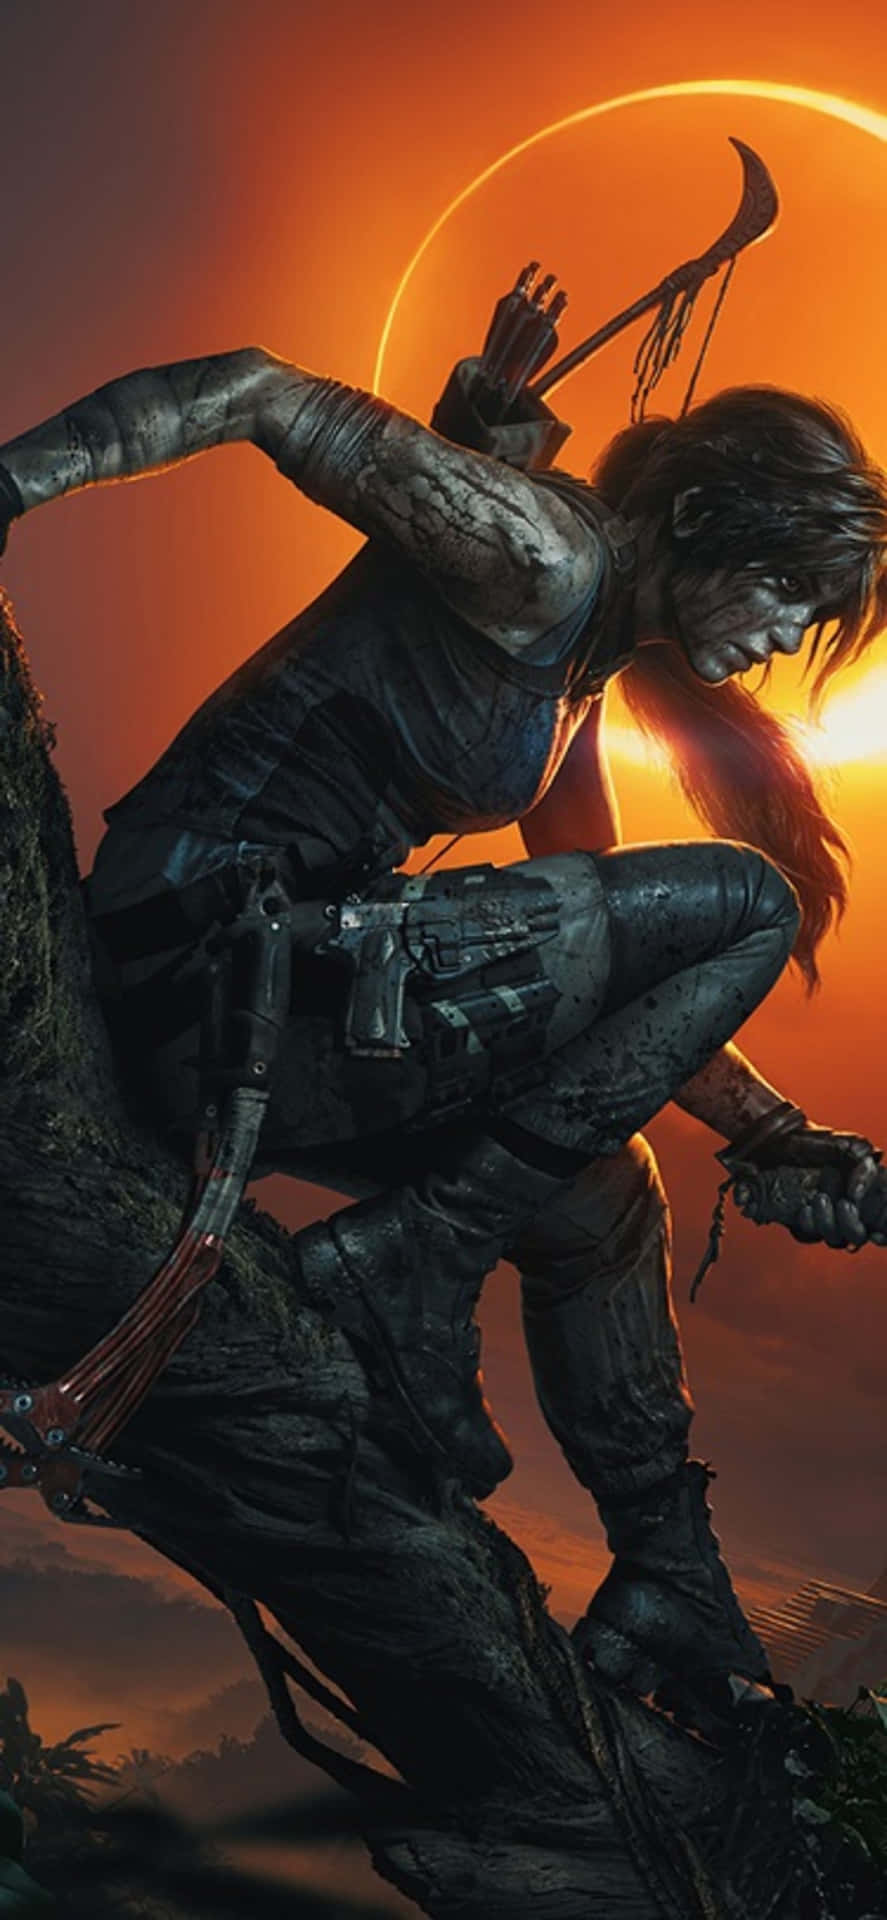 Desvendeos Segredos Das Ruínas Antigas Em Shadow Of The Tomb Raider